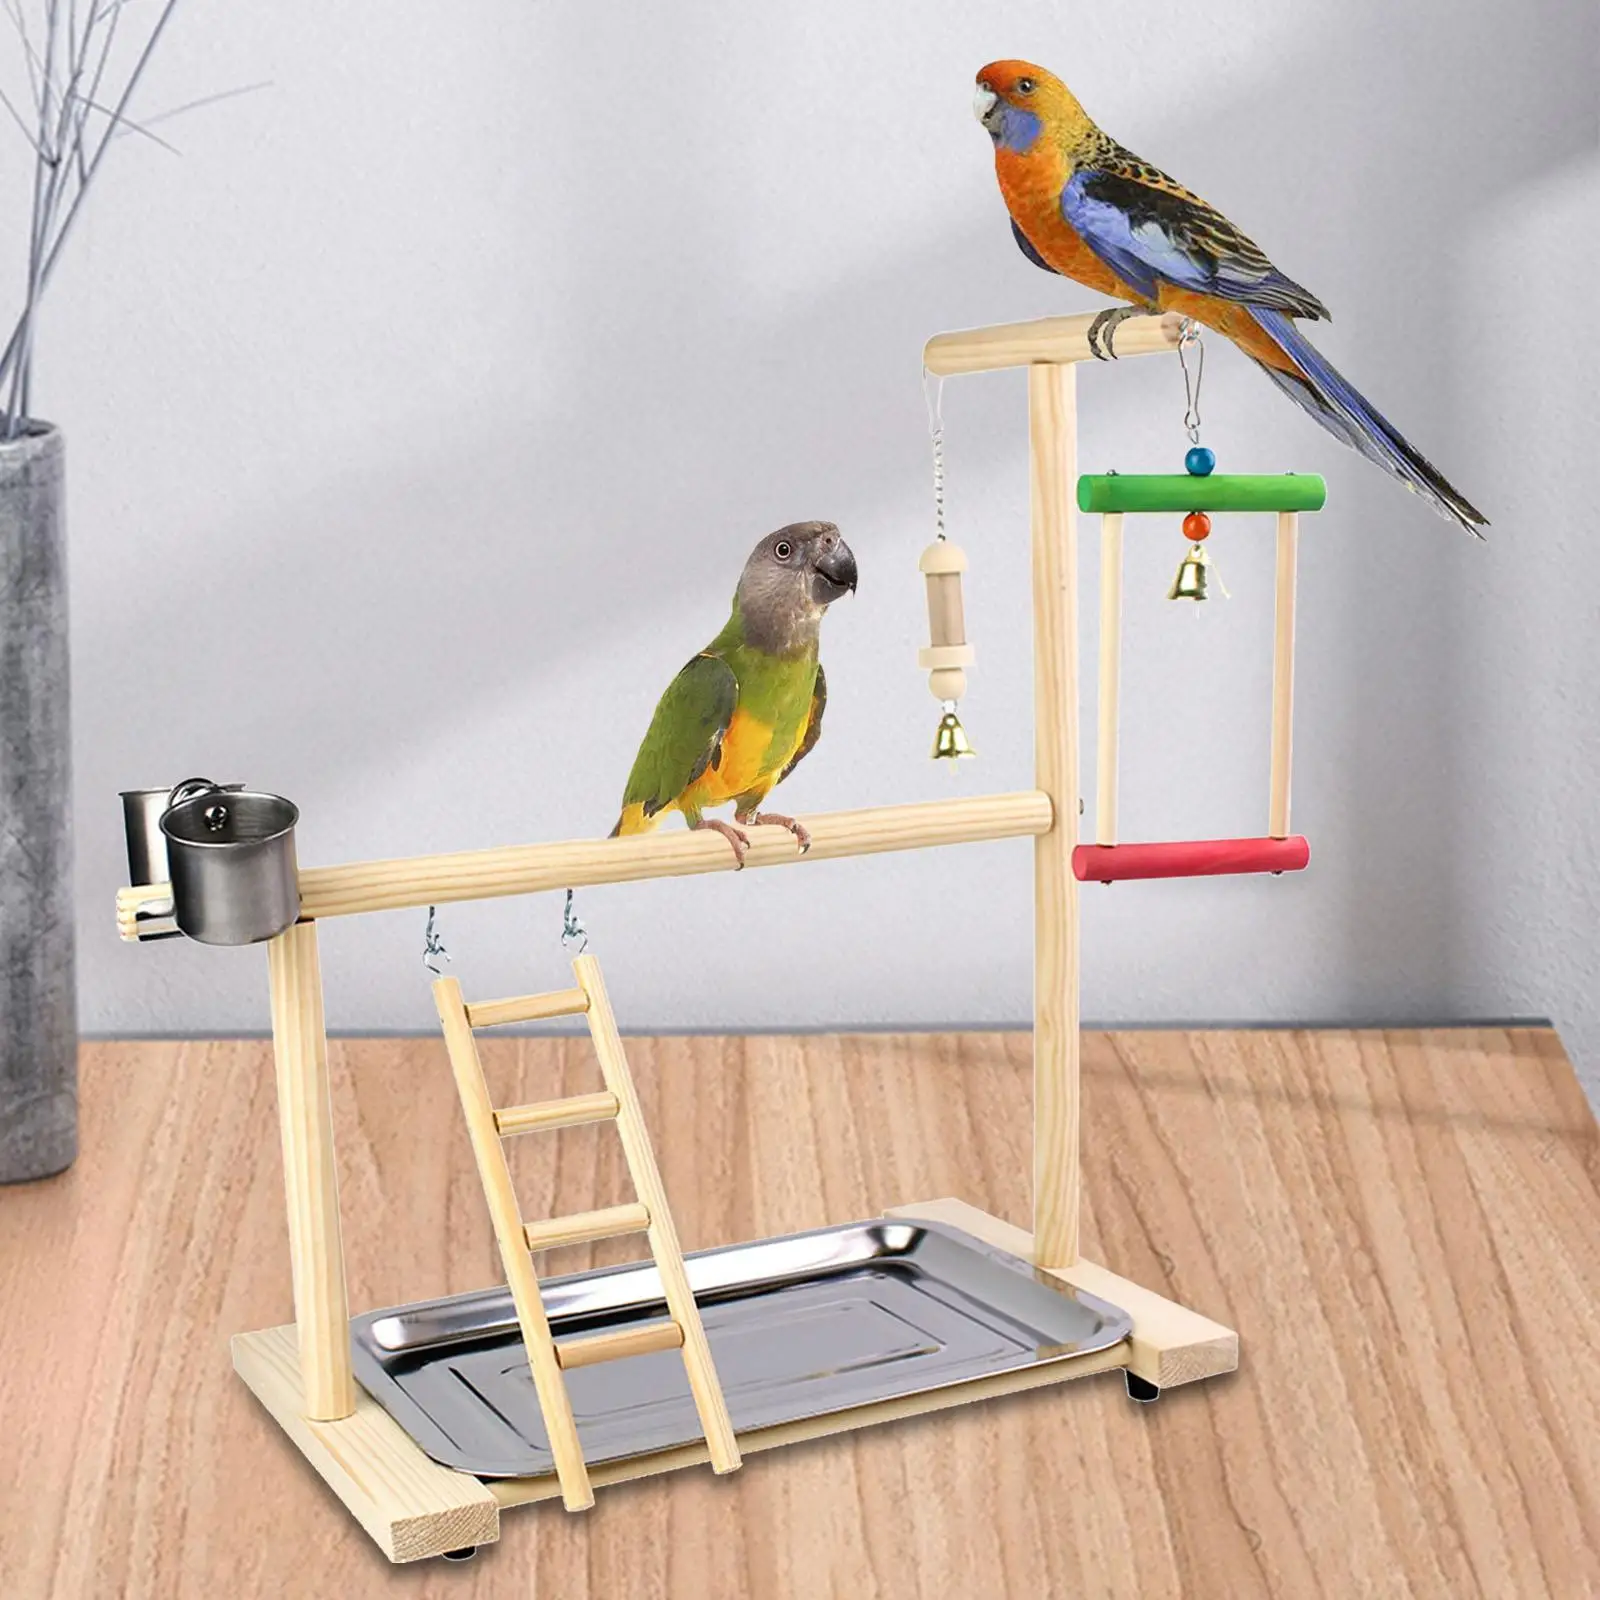 Wood Bird Platform Perch Bird Playground with Feeder Gym Ladder Exercise Bird